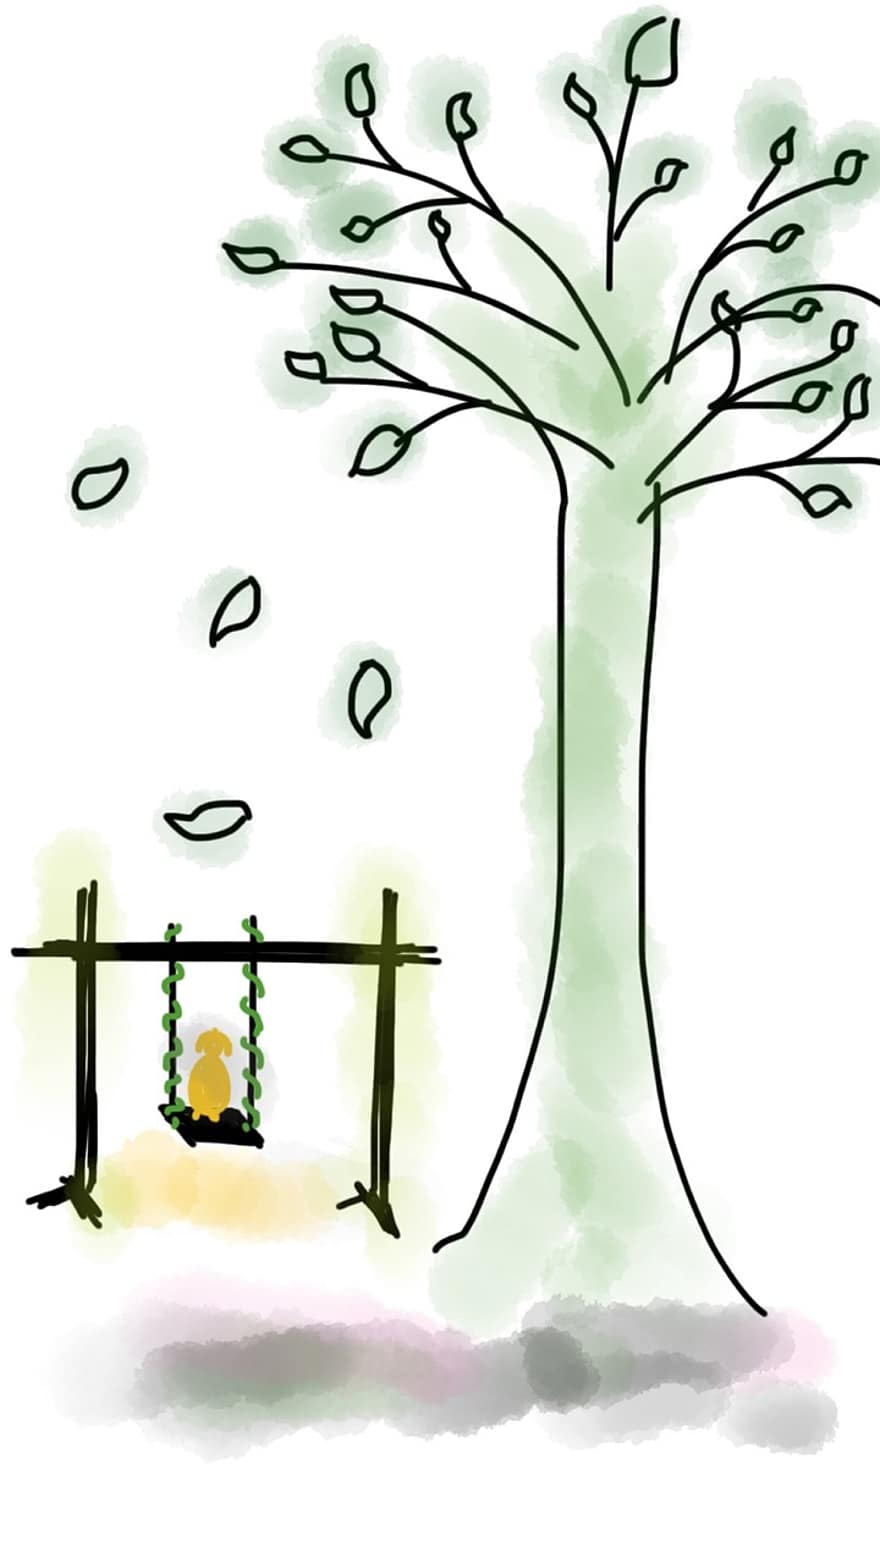 arbre, swing, fulles, gos, gosset, diversió, fulles caigudes, parc, naturalesa, relaxa't, arbre gran